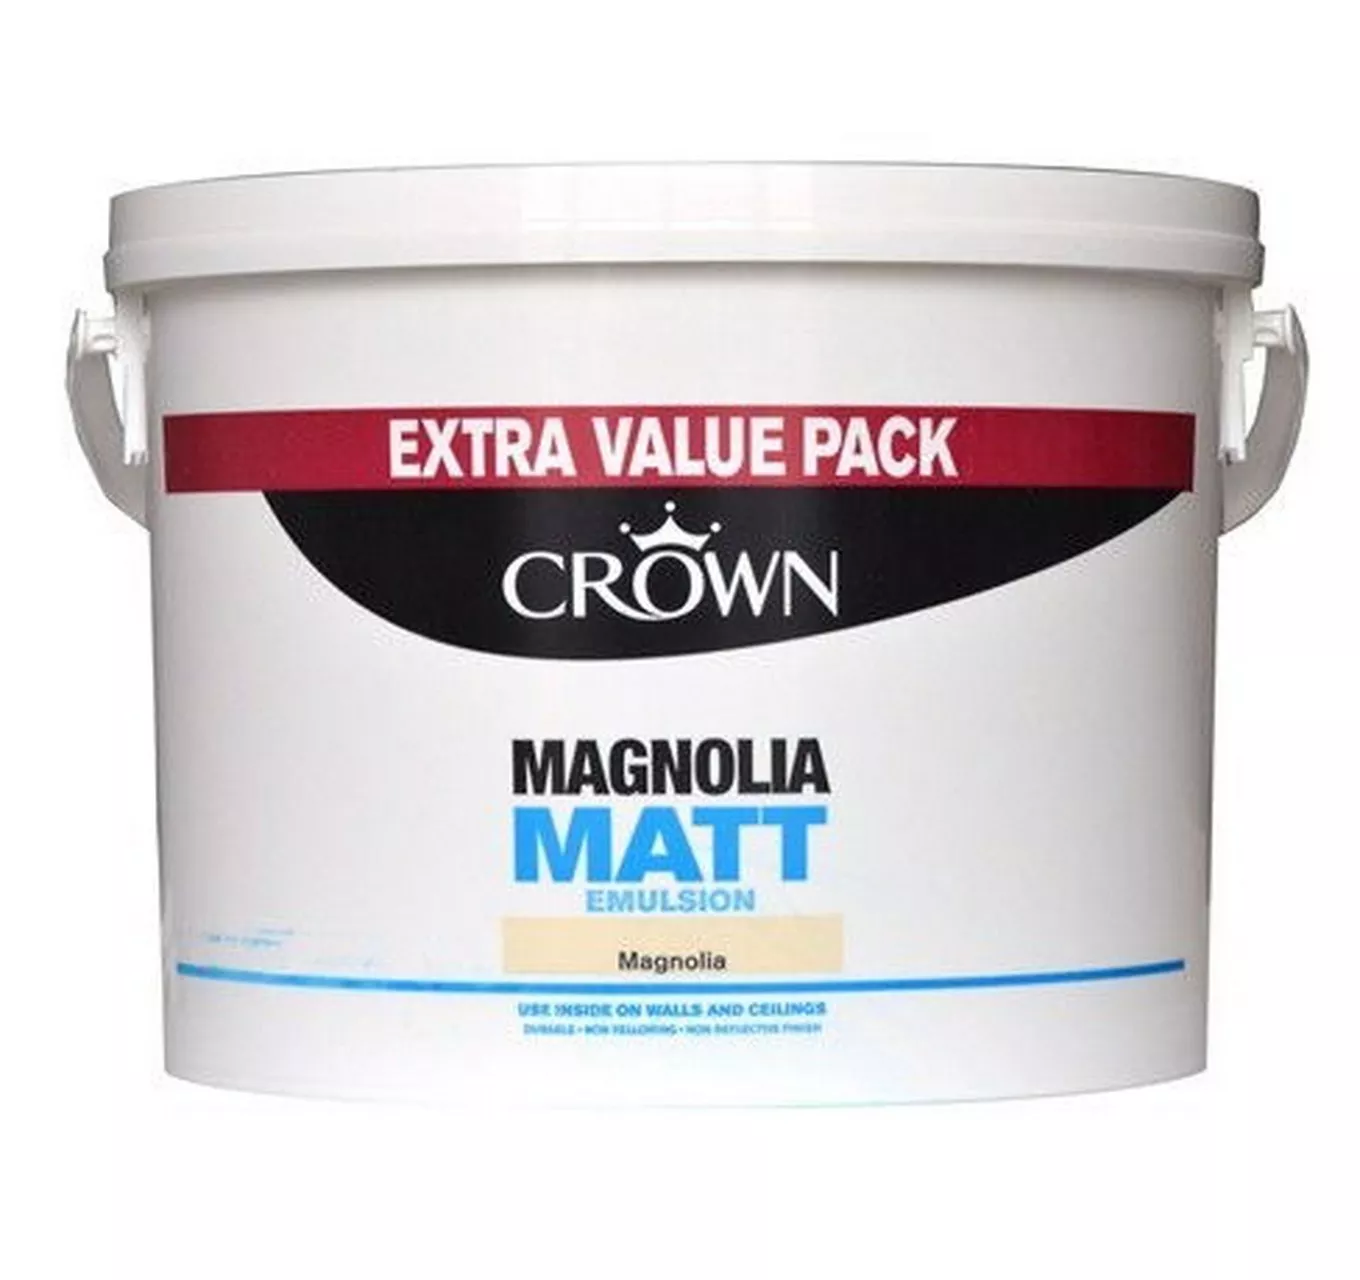 Matt Emulsion Magnolia 7.5L